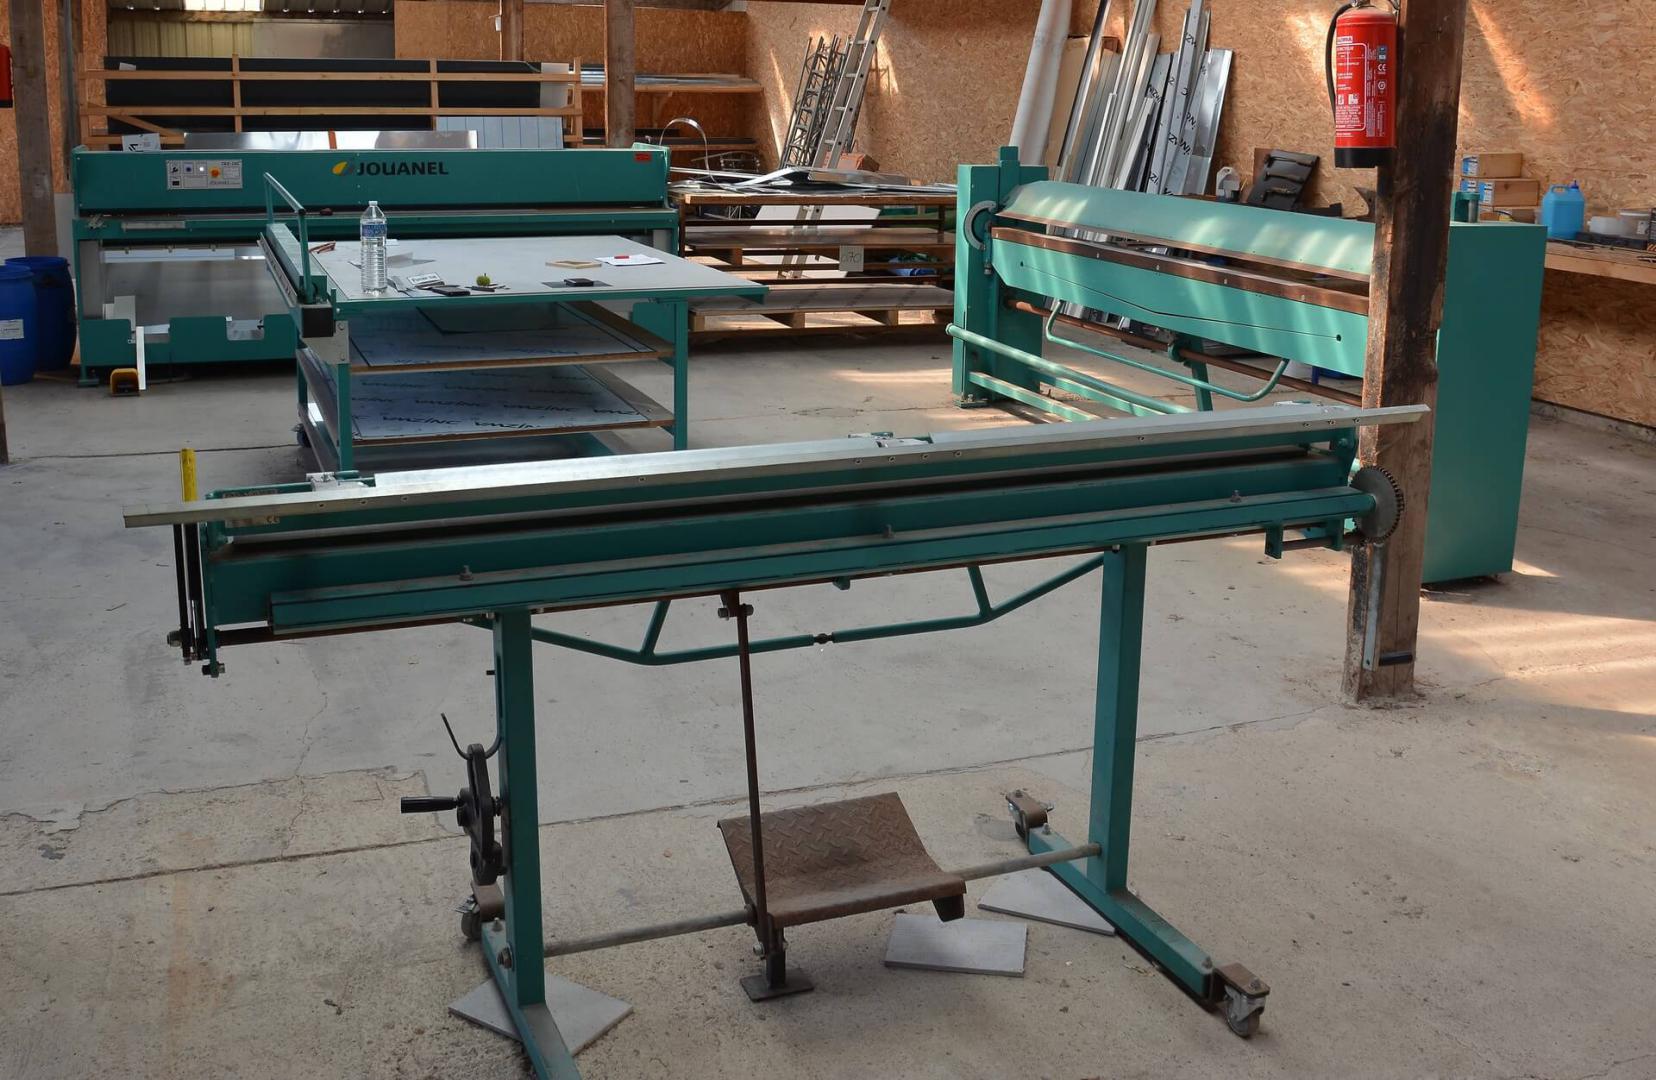 Atelier Guiriec Couverture : table de découpe, guillotine électrique de 3 m, 2 plieuses manuelles de 2 et 3 m pour couper zinc et aluminium